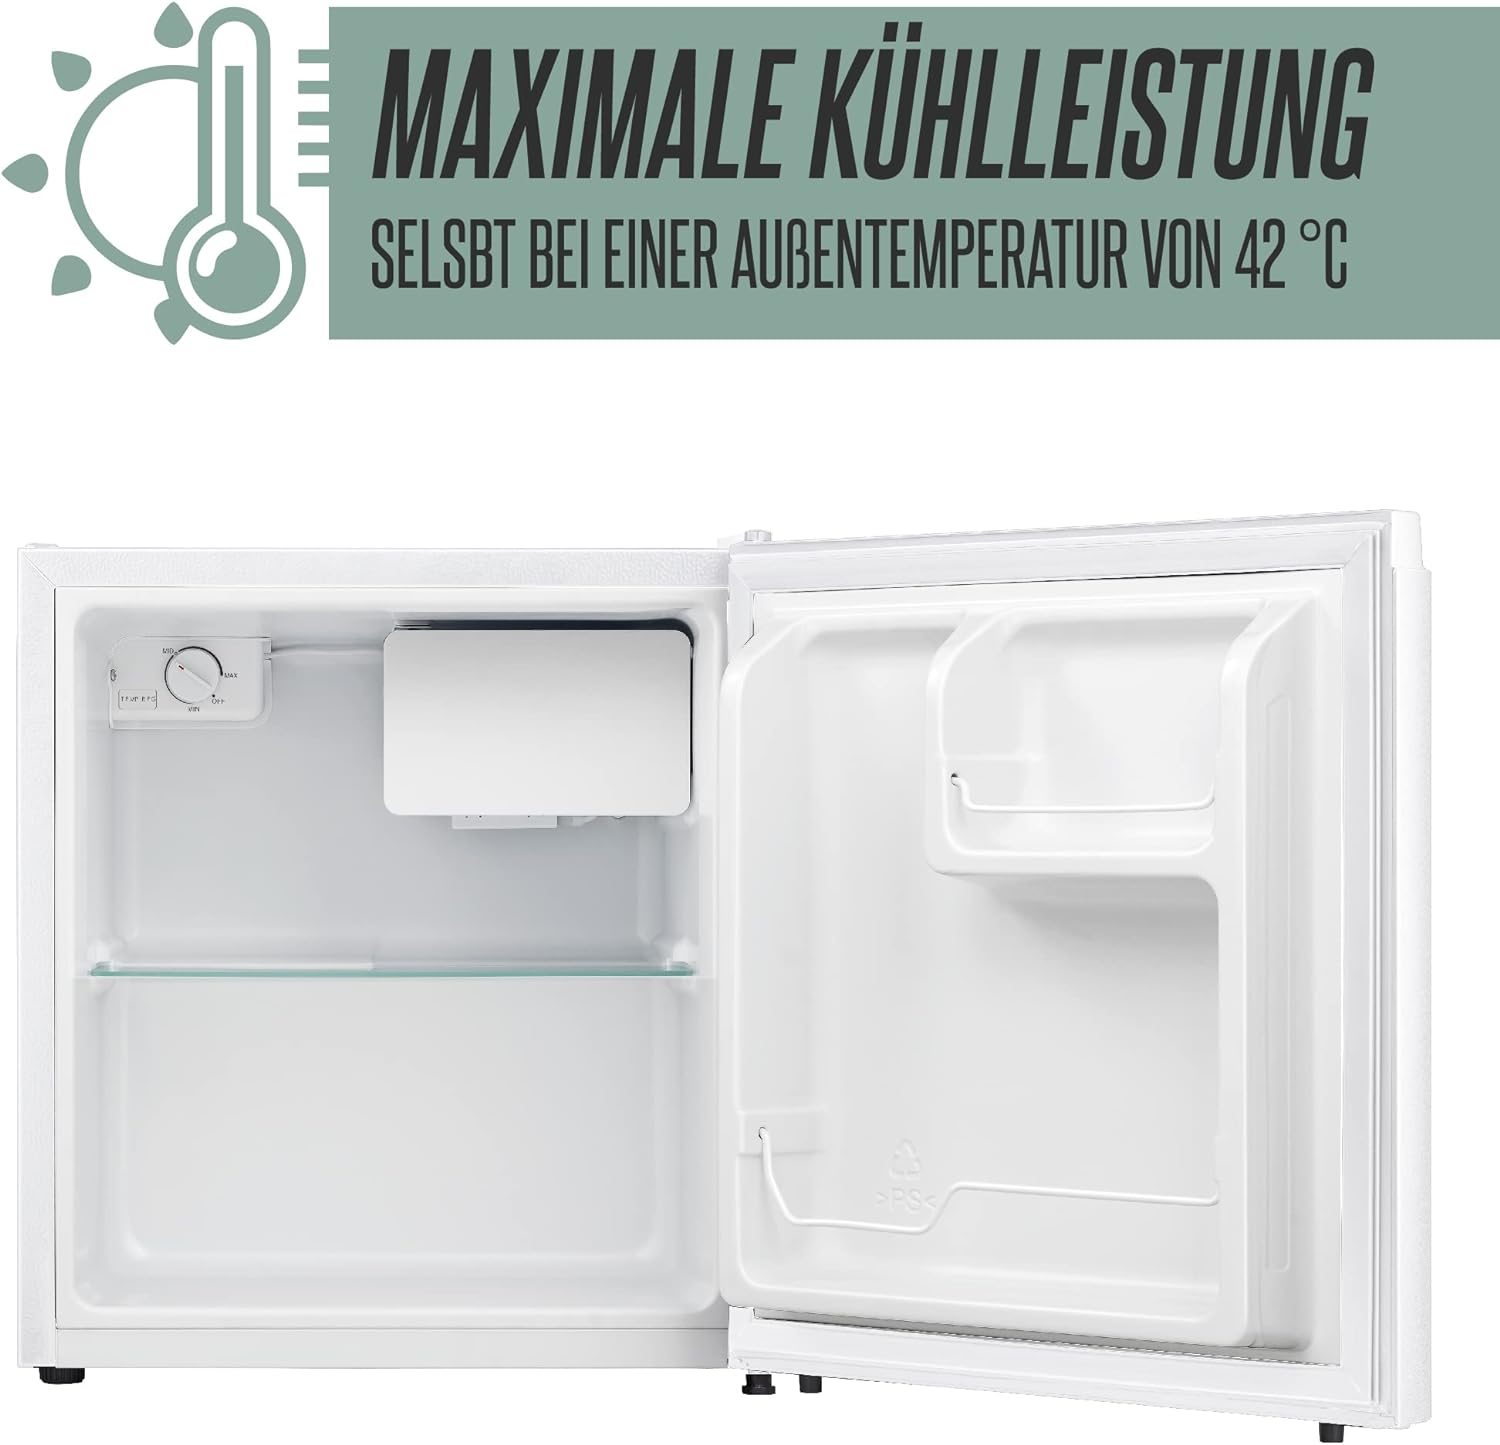 HEINRICHS Weiss HEINRICHS (E, Getränkekühlschrank Kühlschrank hoch, Mini Weiß) klein 4188 HKB kompakt 51 45L leise cm